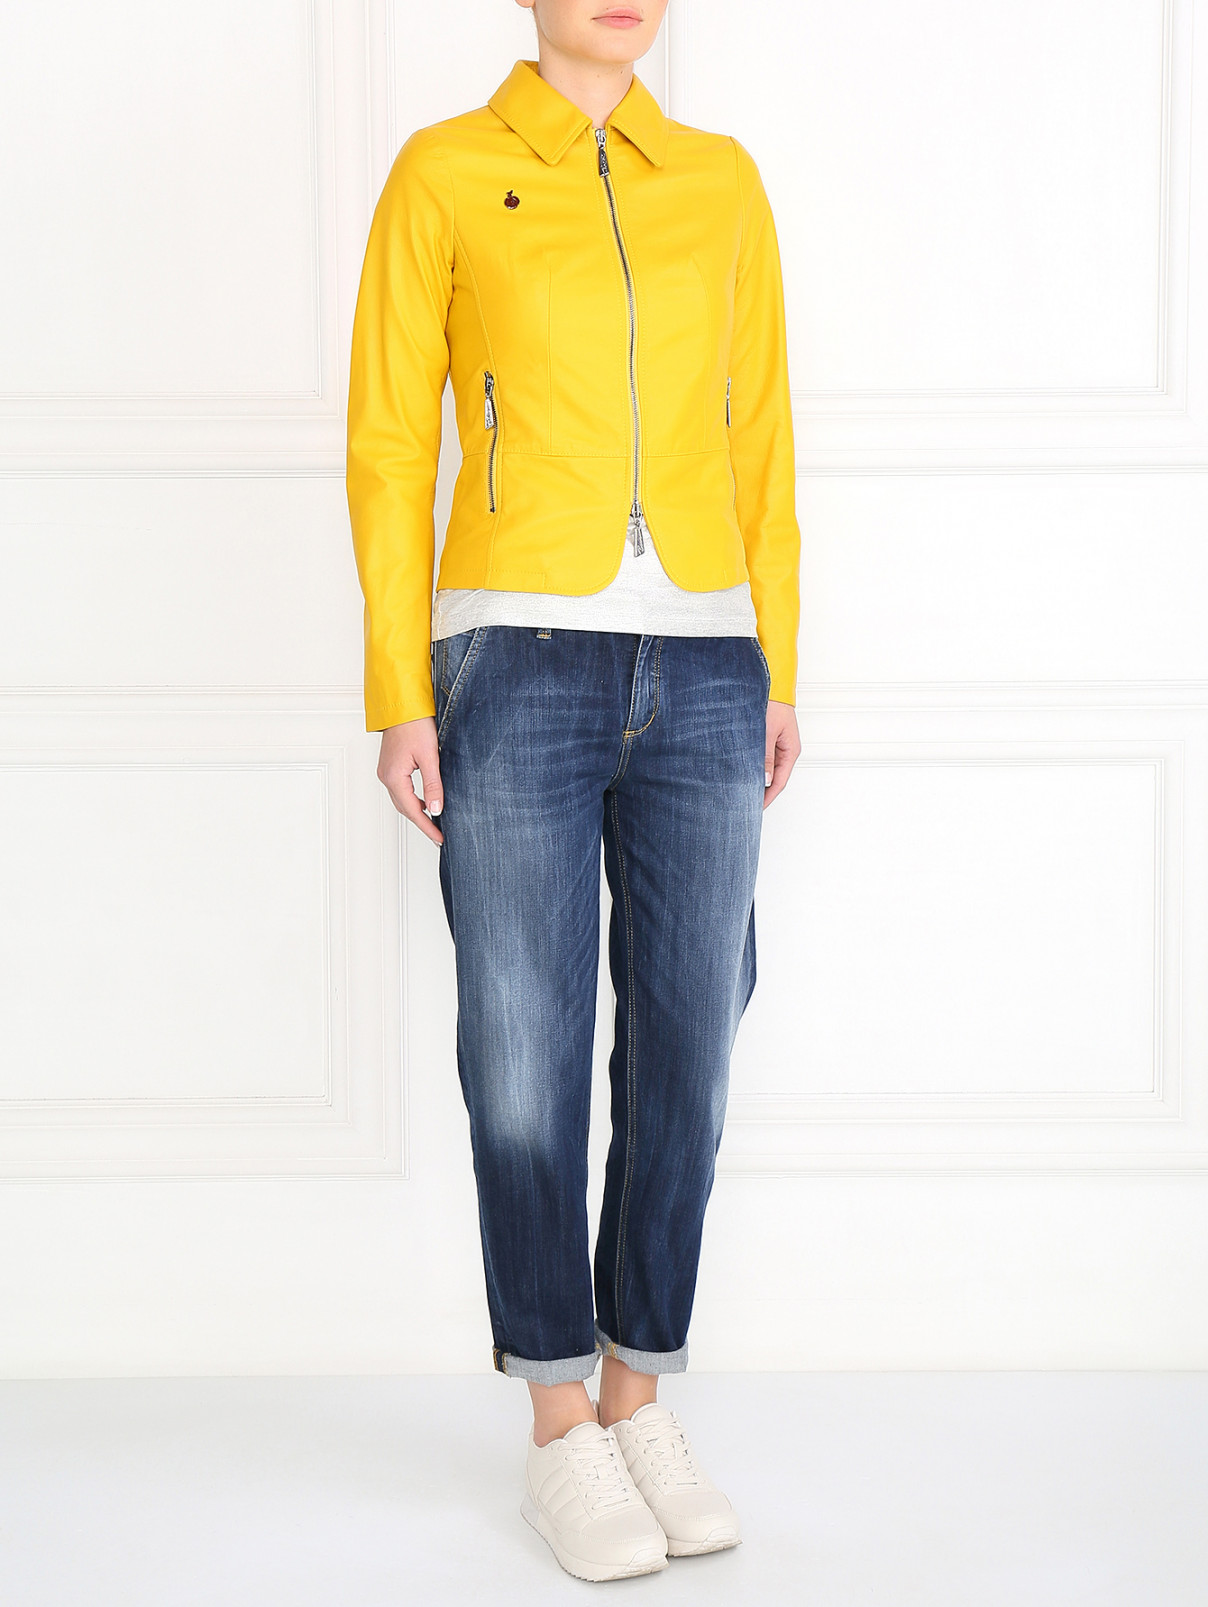 Куртка из кожи на молнии BOSCO  –  Модель Общий вид  – Цвет:  Желтый